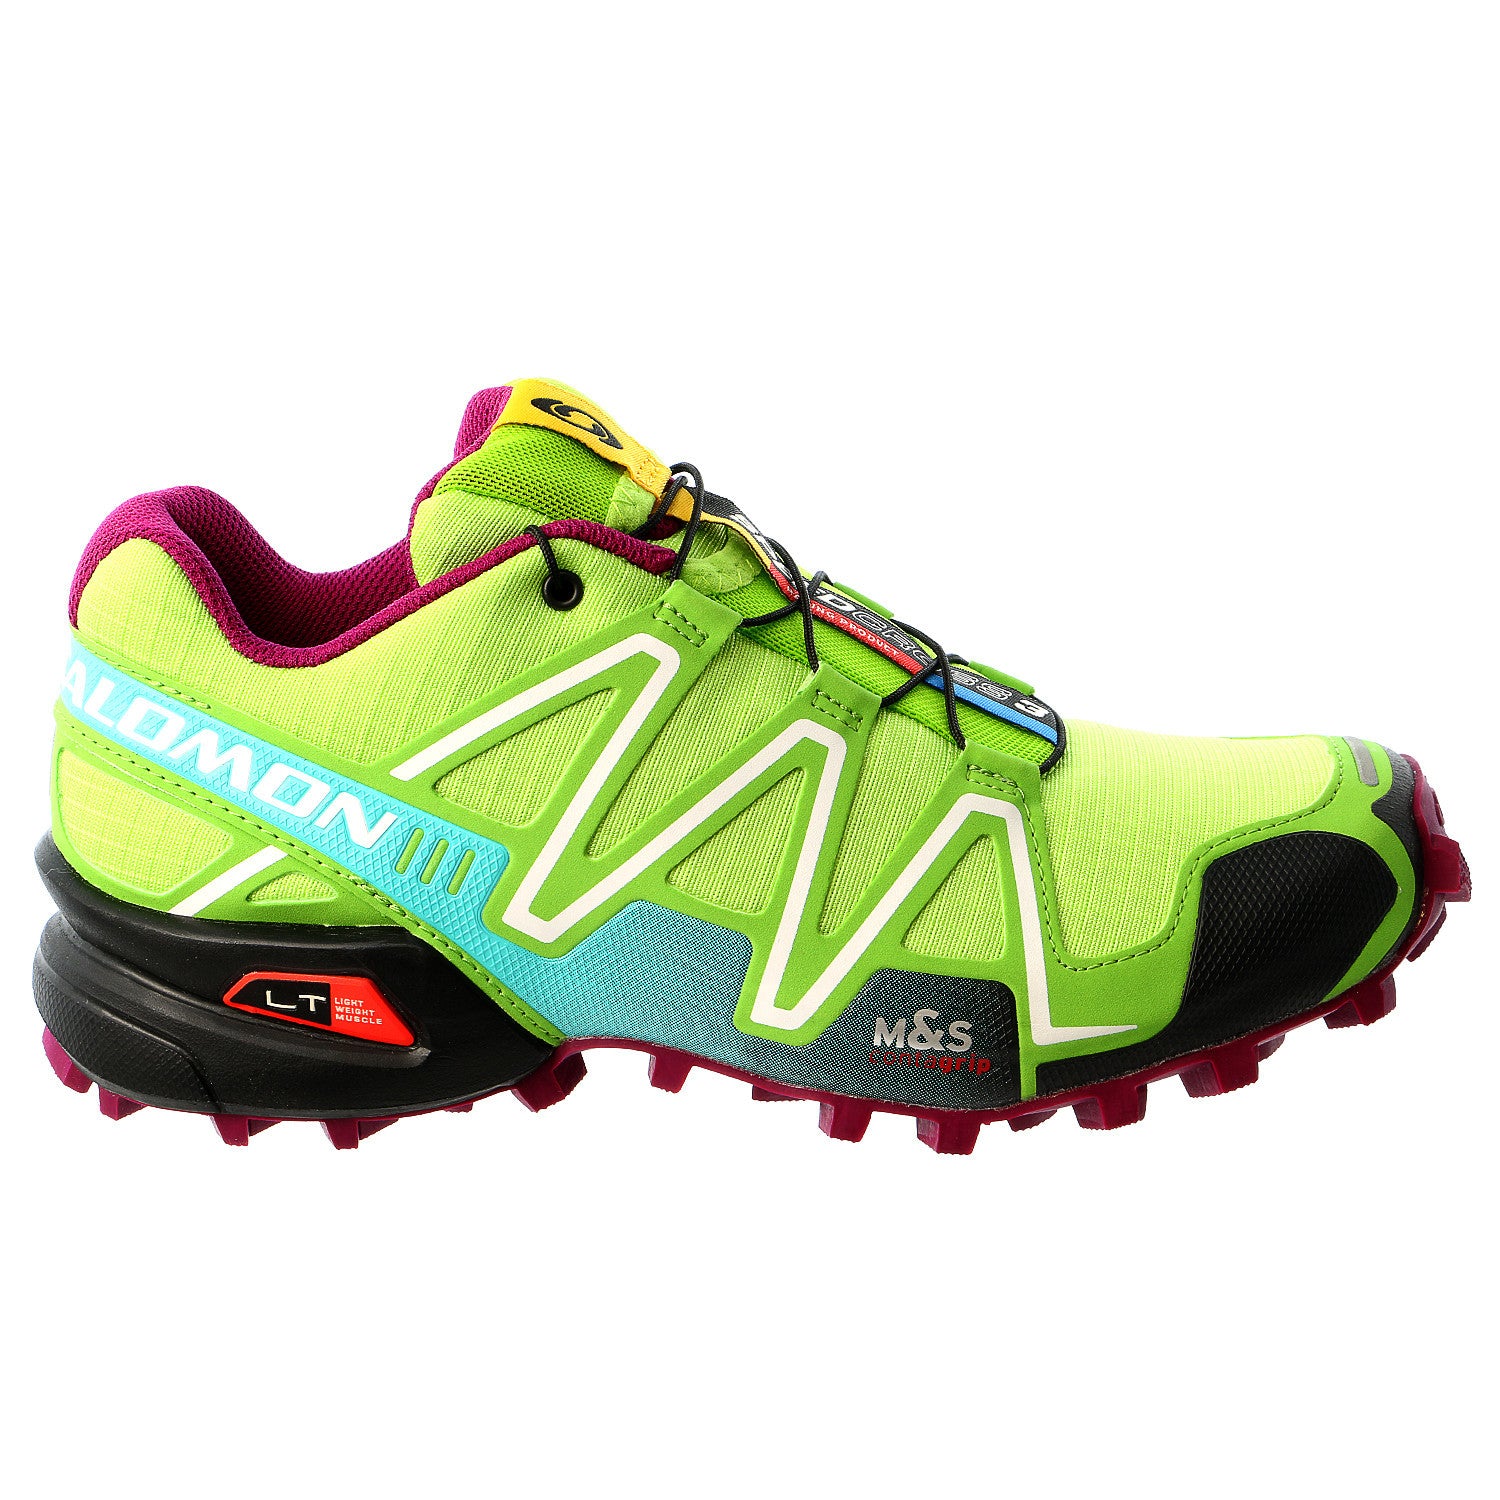 Feest Beroemdheid Verstenen Salomon Speedcross 3 W Trail Running Shoe - Womens - Shoplifestyle